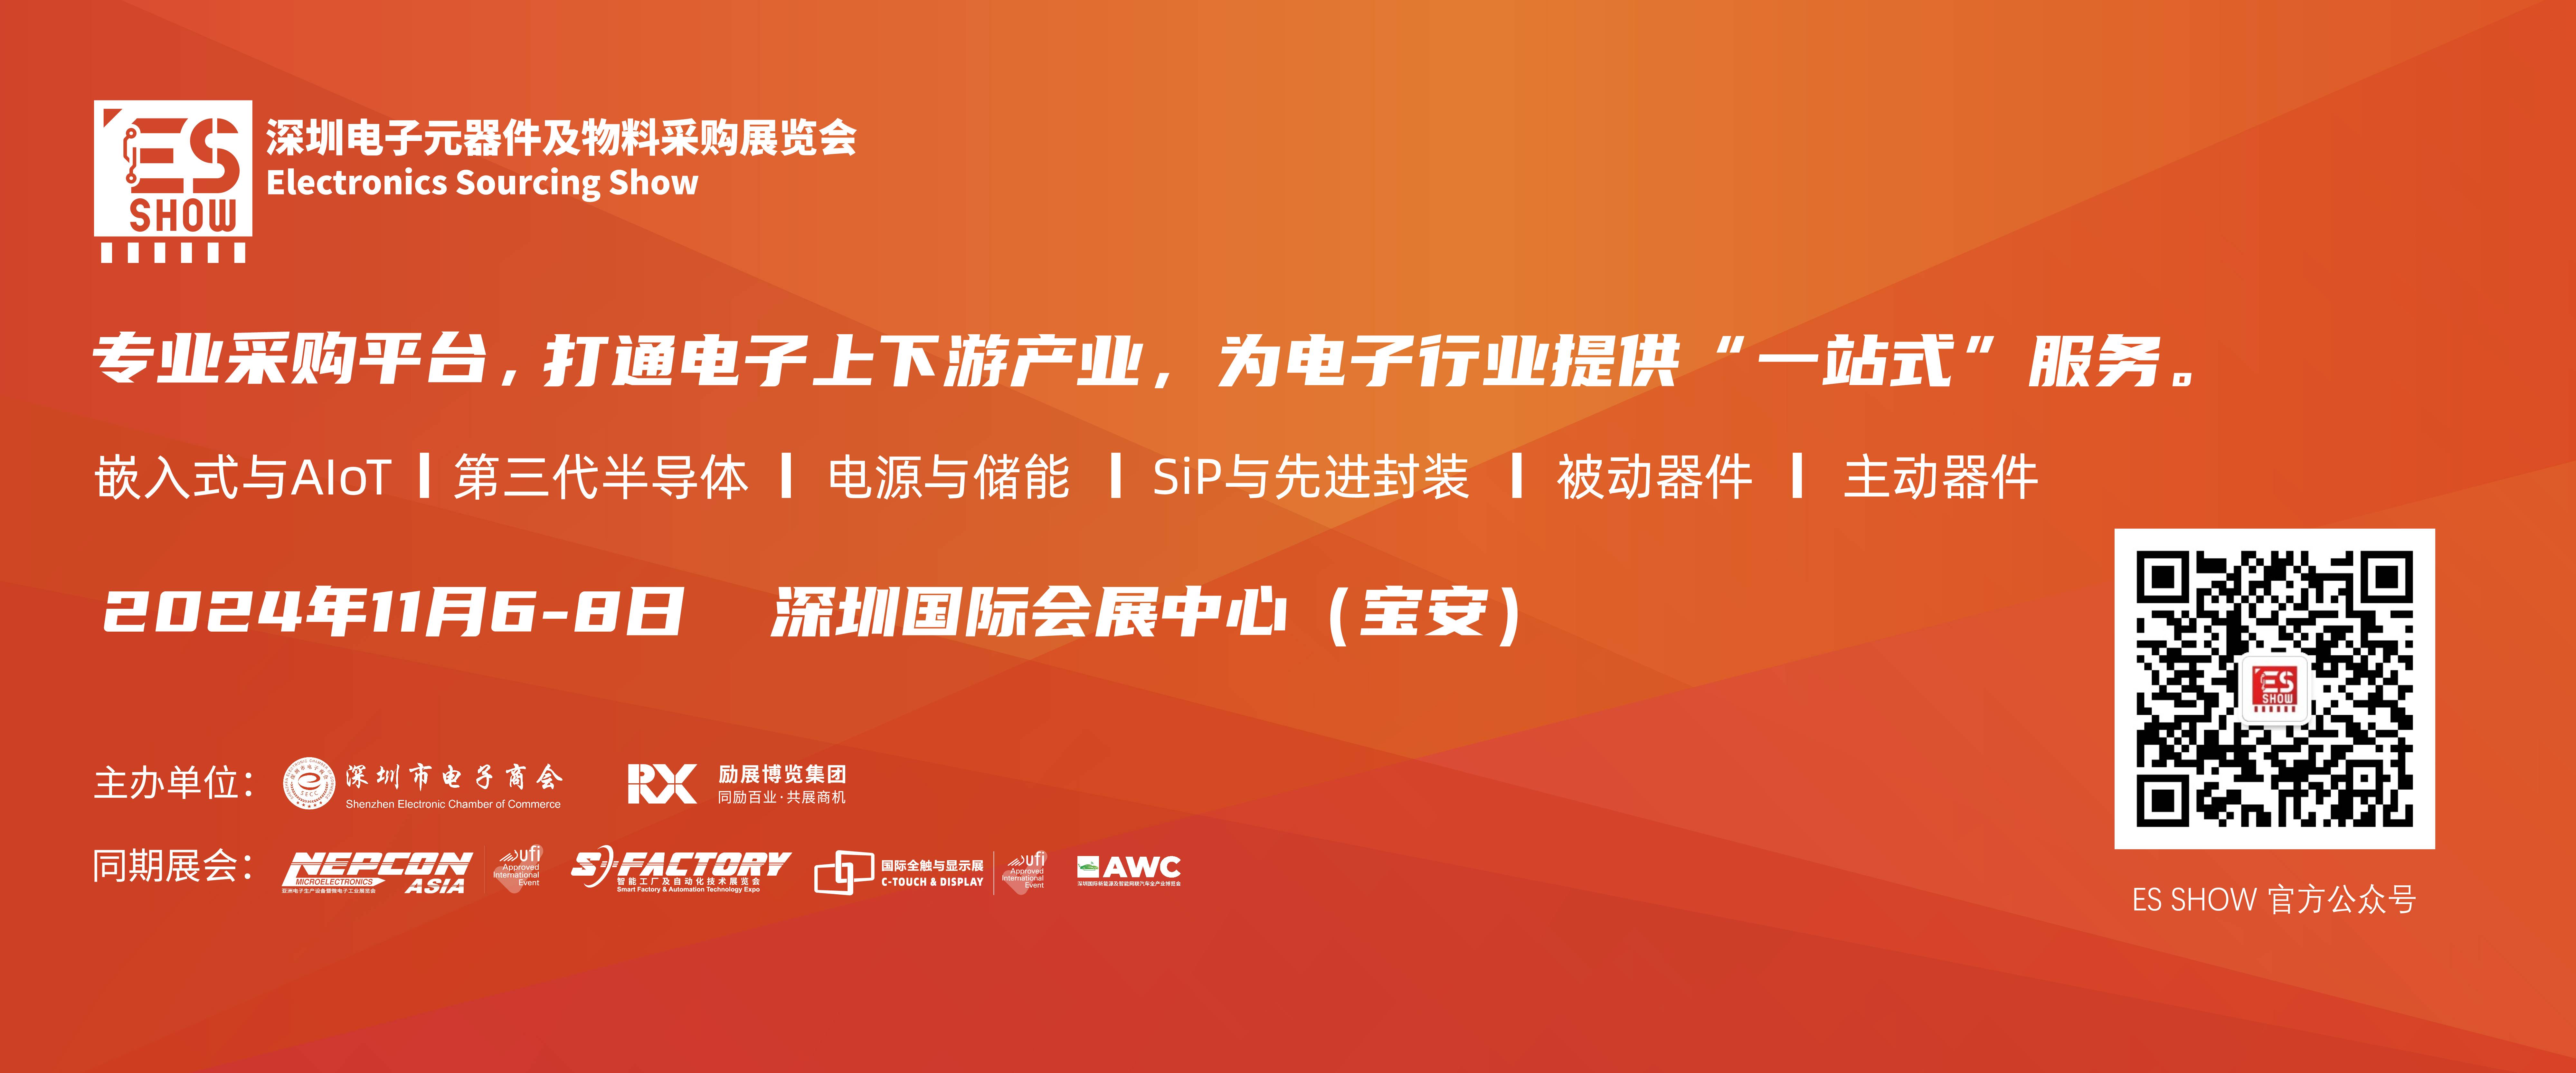 深圳电子展 中国电子展 碳中和 储能 华南电子展